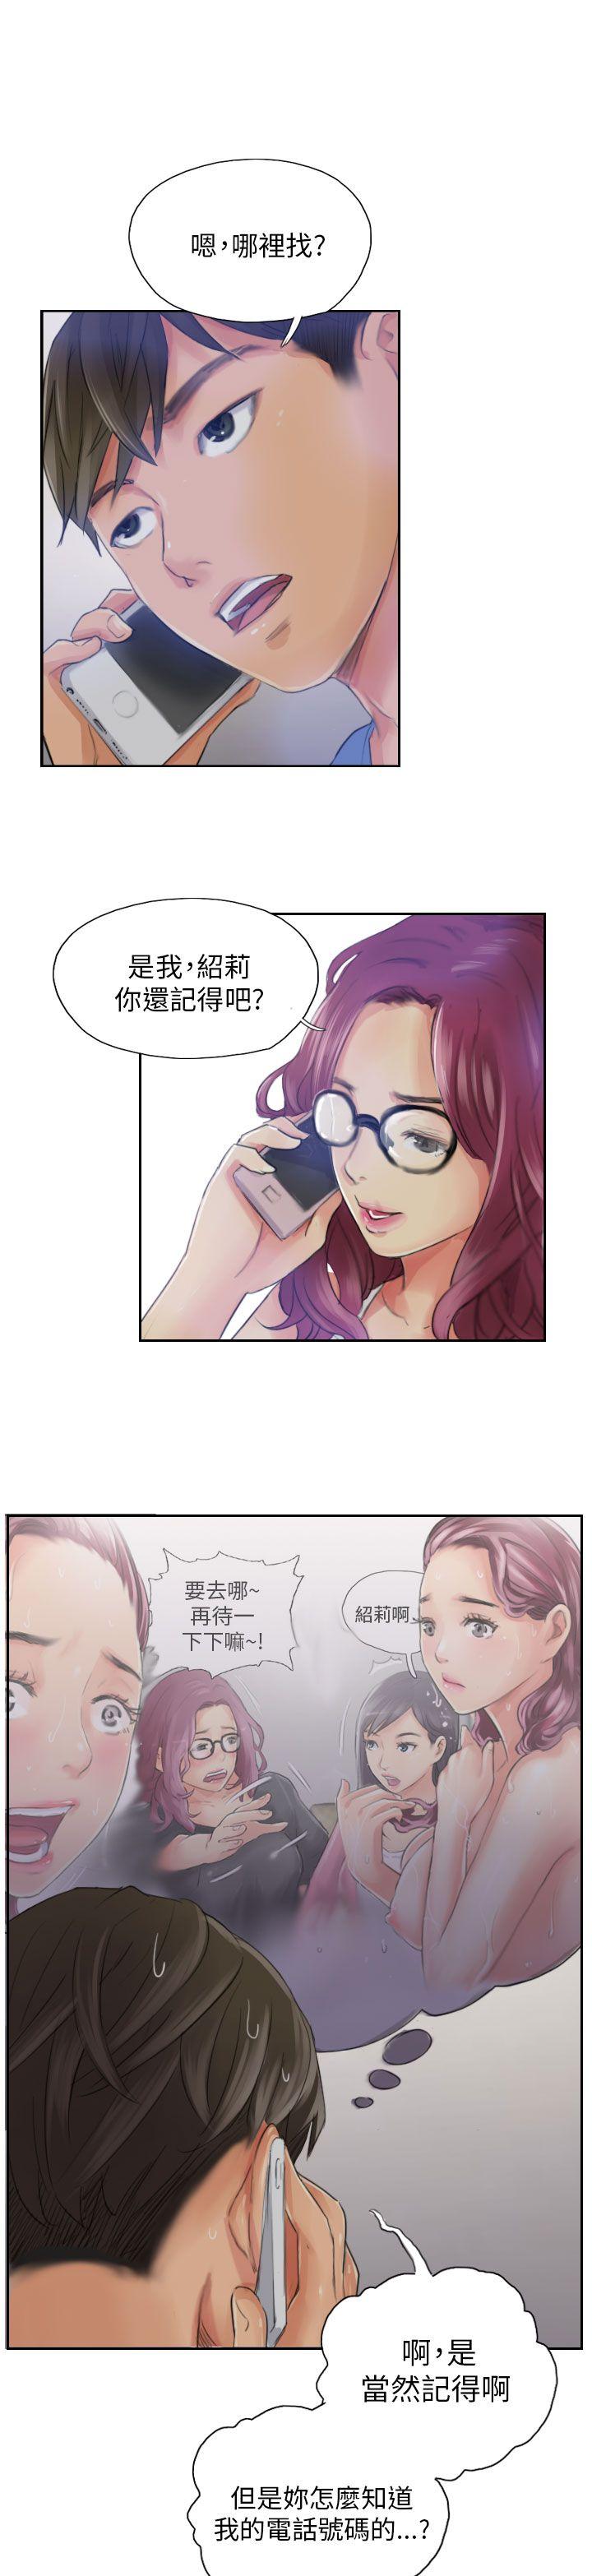 韩国污漫画 NEW FACE 第16话 23